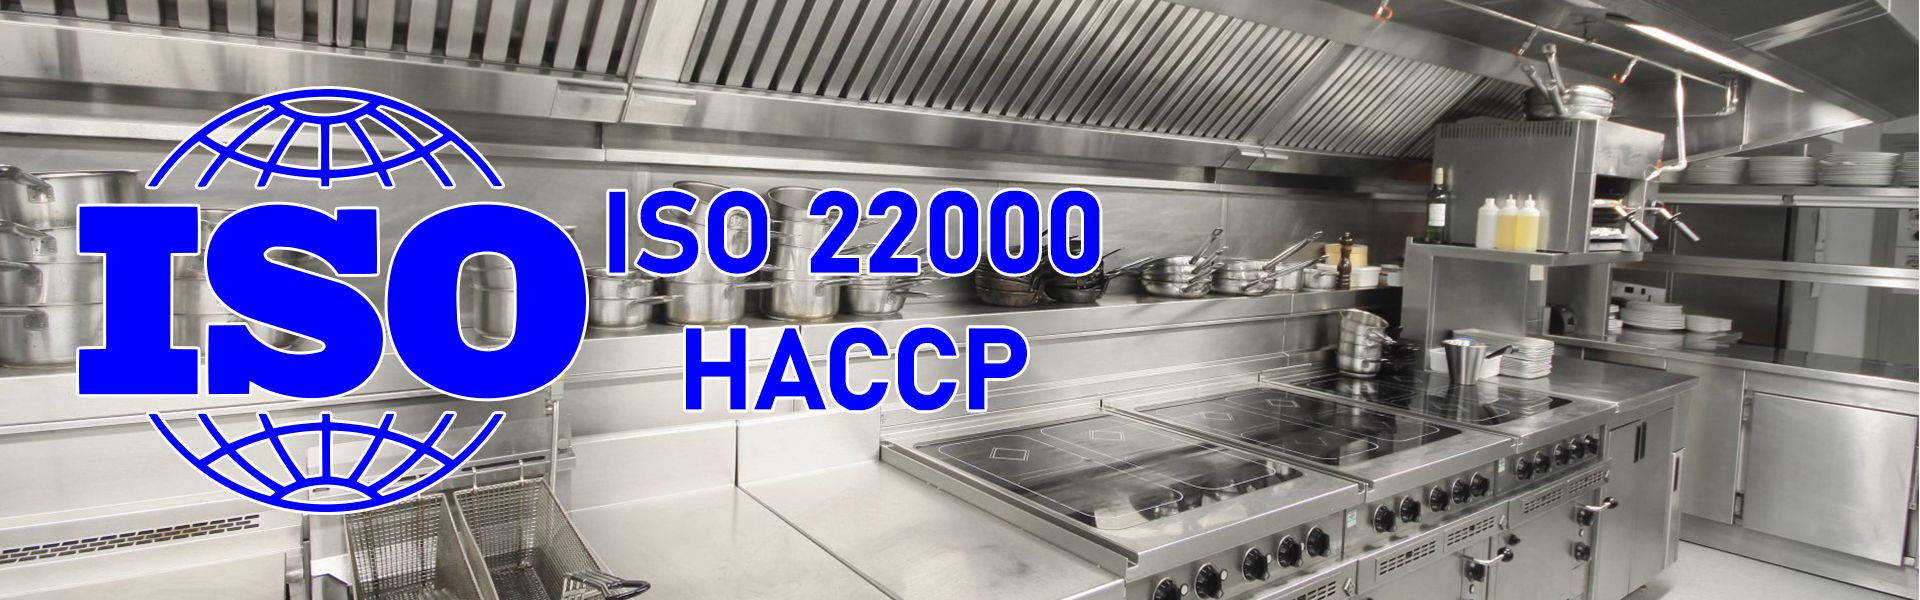 دوره ایزو ISO: HACCP جهت مدیران،سرآشپزان و سوپر وایزرها 